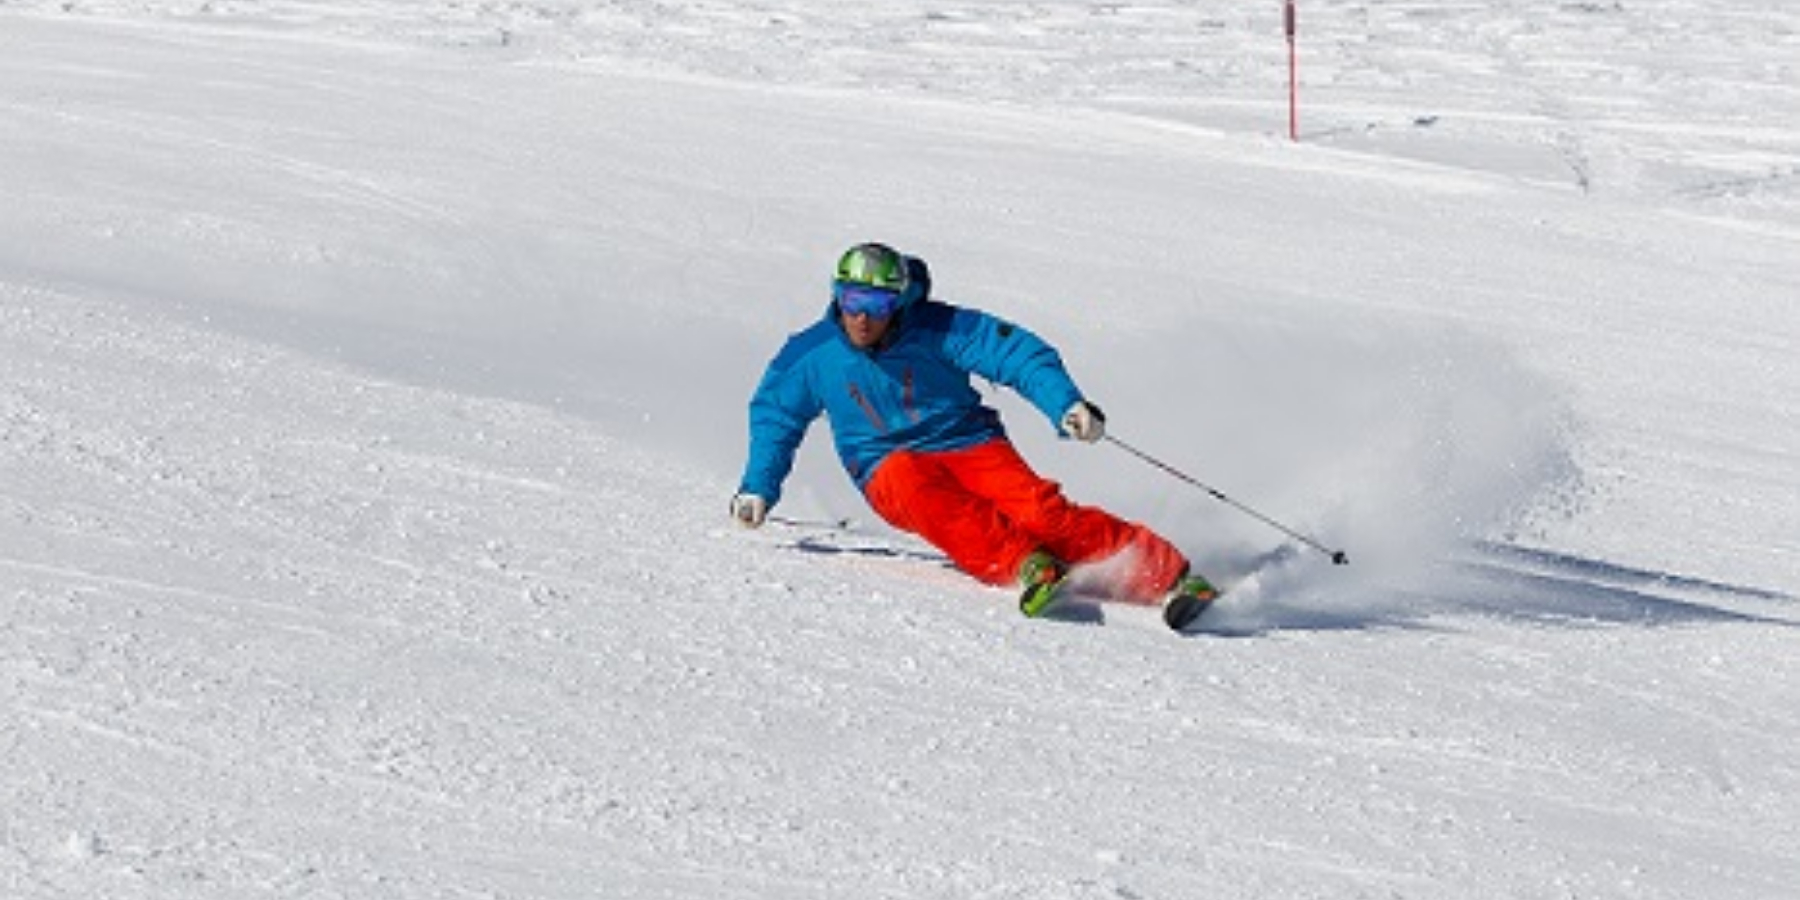 Dopo l'abbondante nevicata dei giorni scorsi, ora si scia con l'offerta "Skipass free": Immagine Elenchi